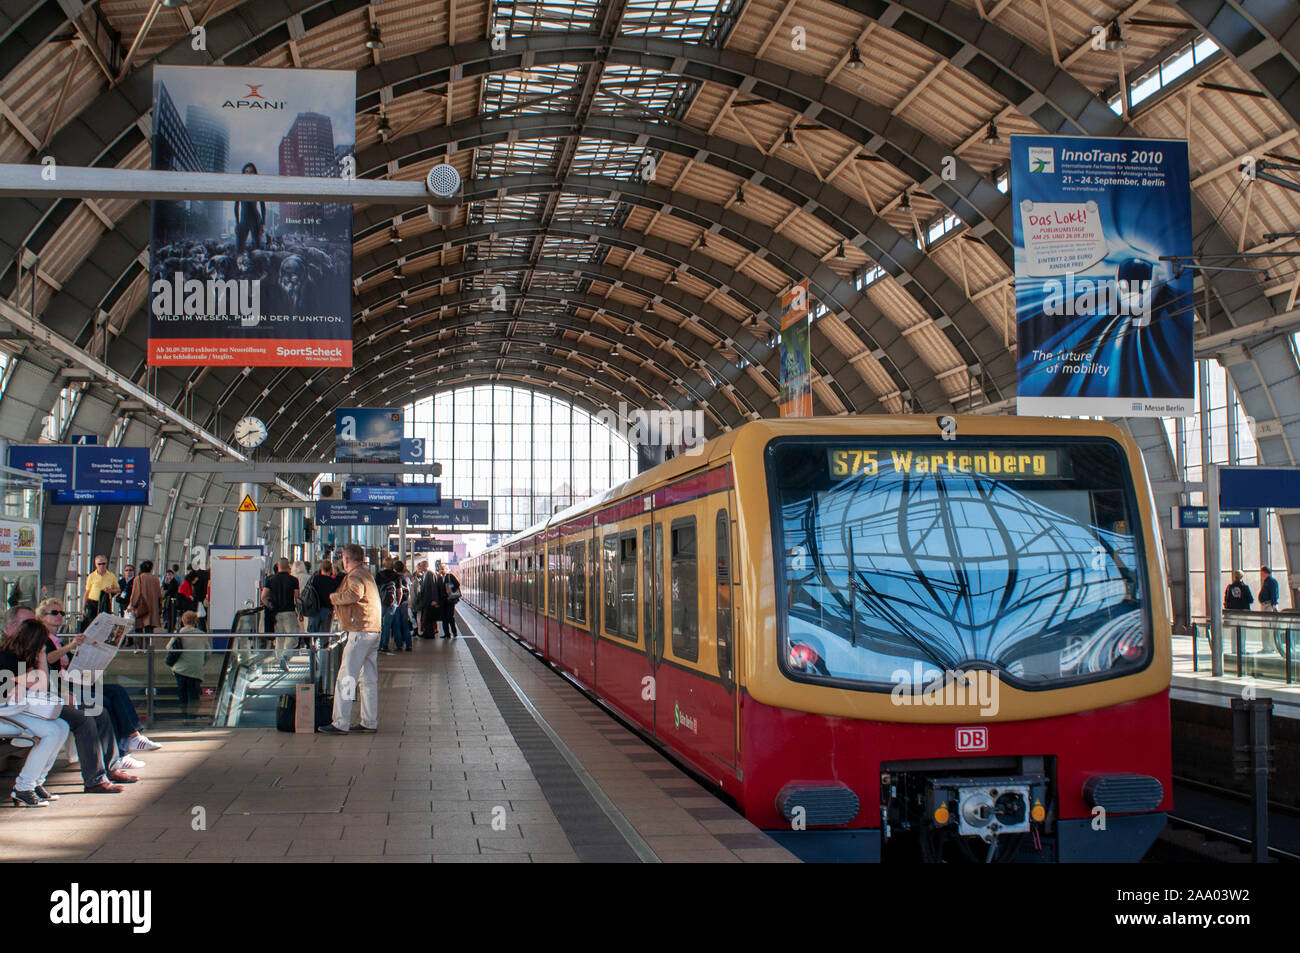 Le train S-Bahn en gare centrale de Berlin Hauptbahnhof Allemagne Banque D'Images